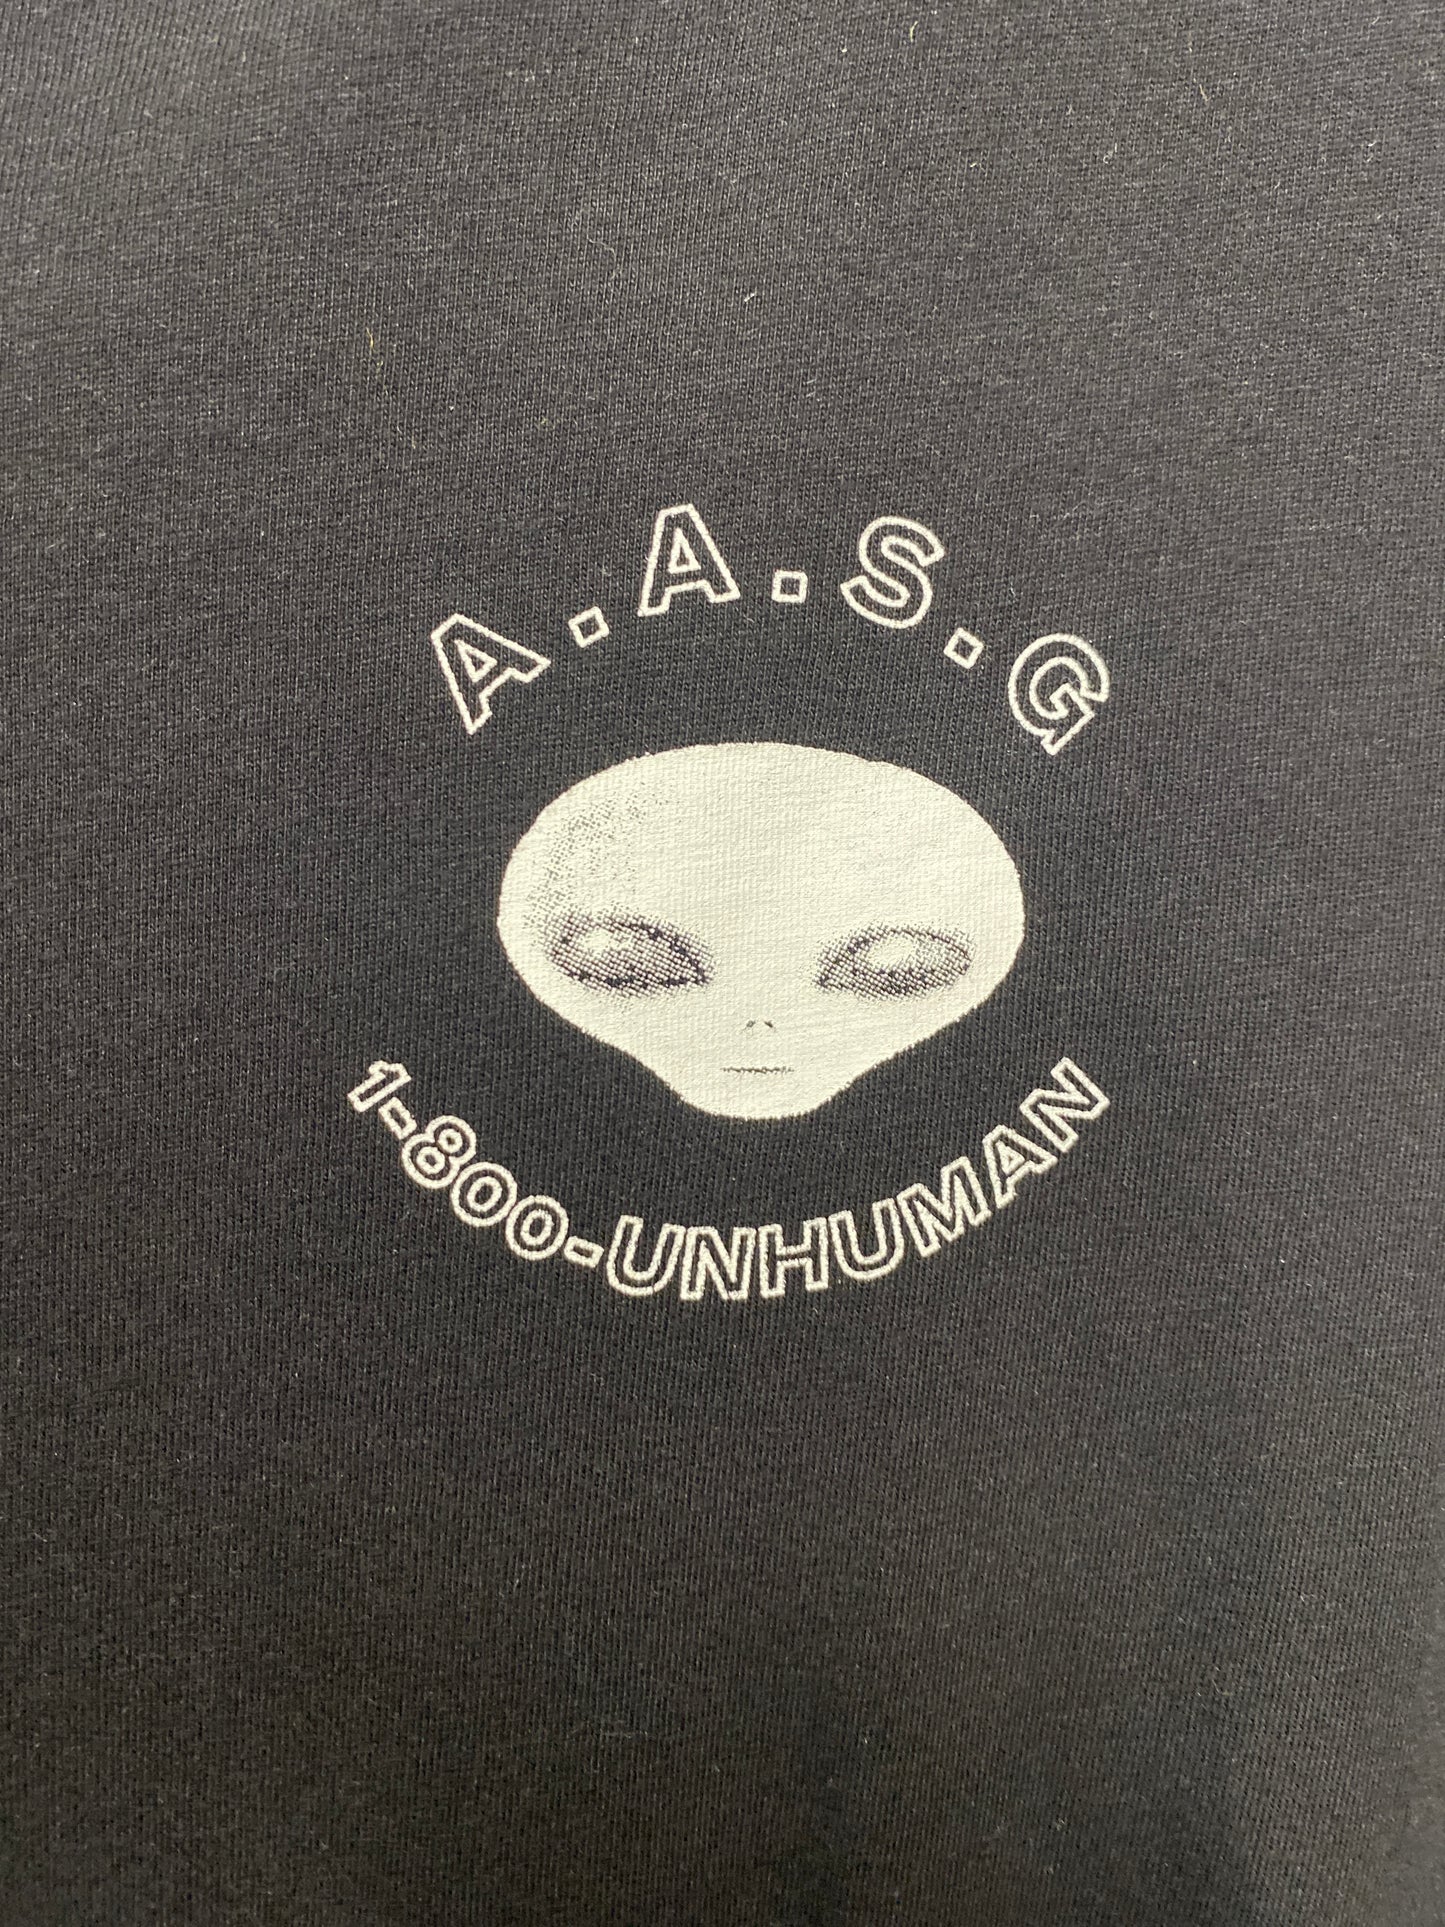 Weekday Unisex Black UFO Cotton T-Shirt Large